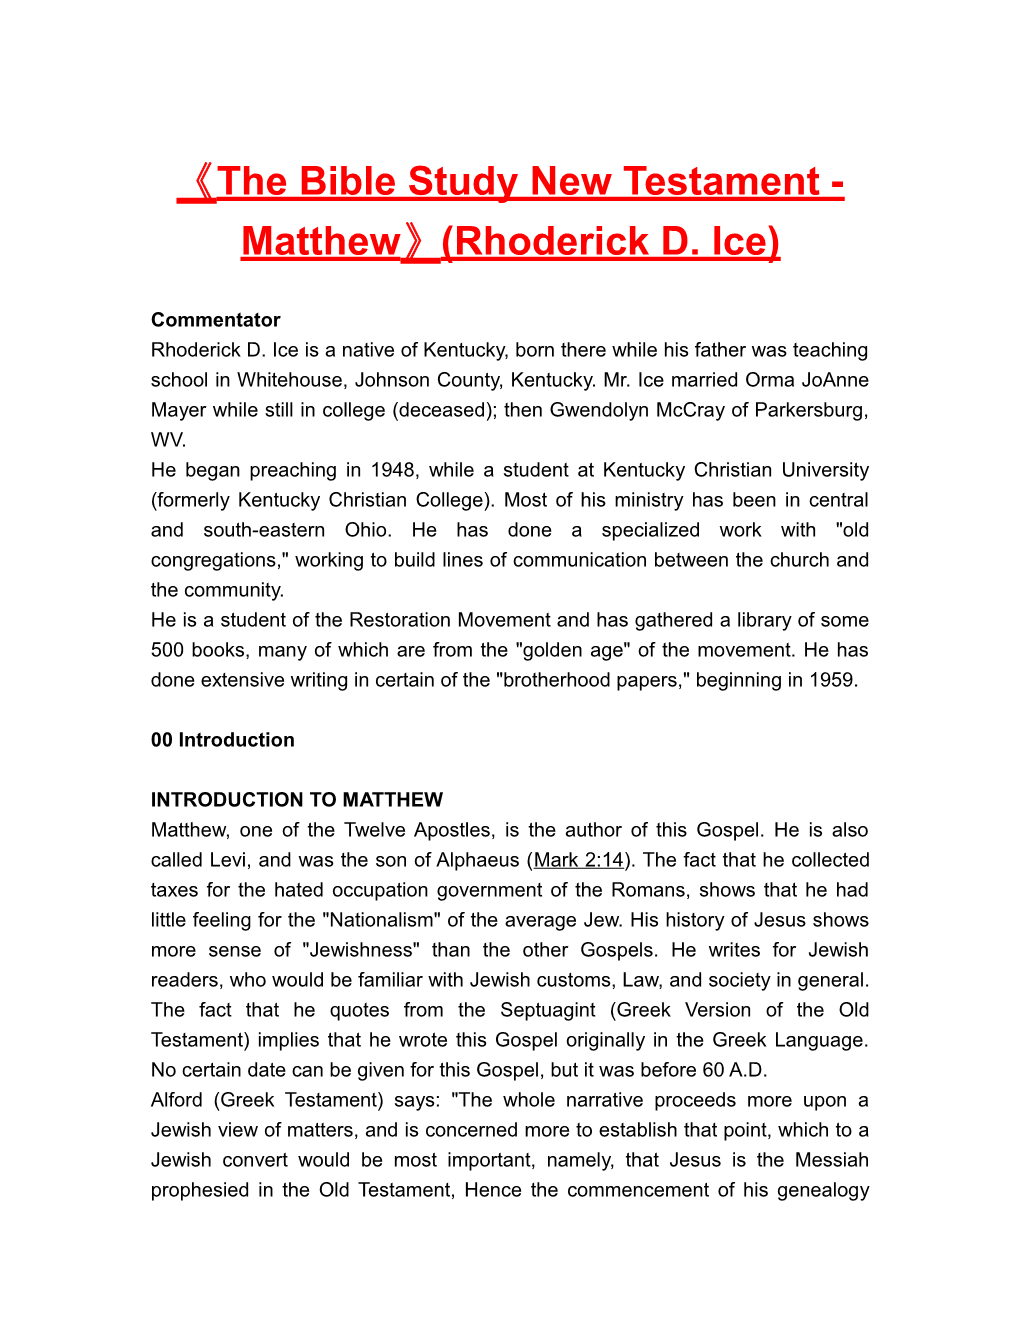 The Bible Study New Testament-Matthew (Rhoderick D. Ice)